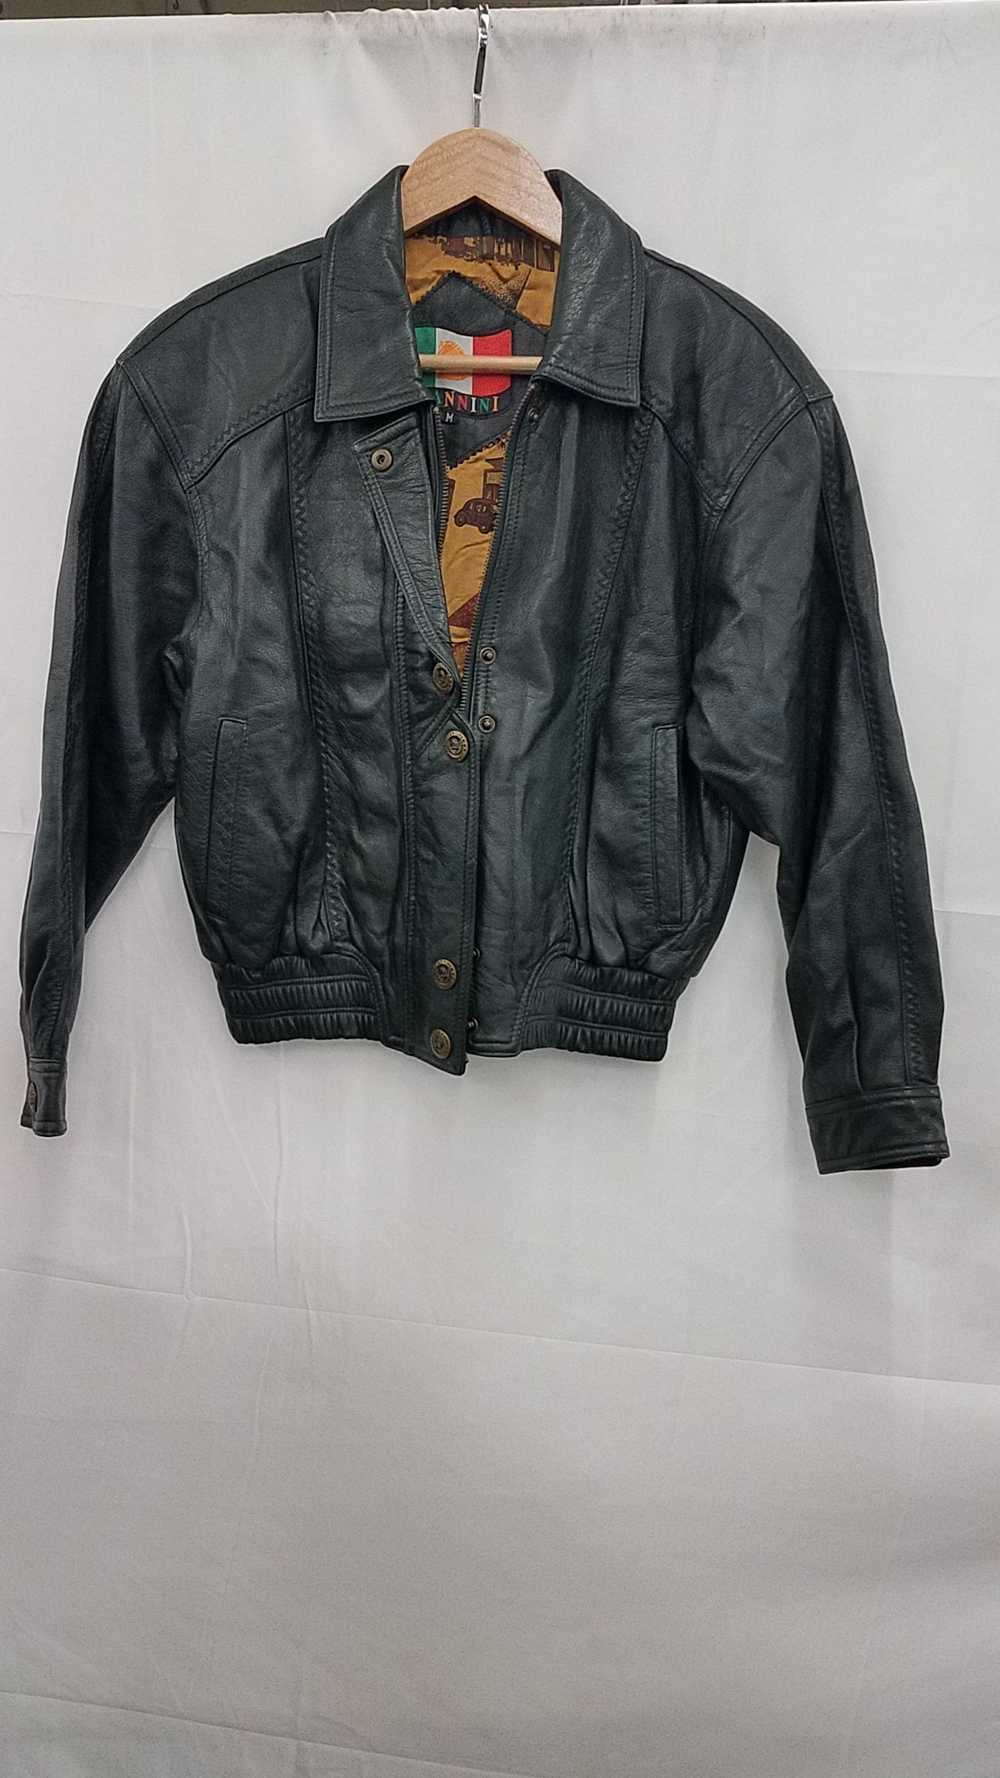 Giannini Leather Jacket Size Medium - image 1